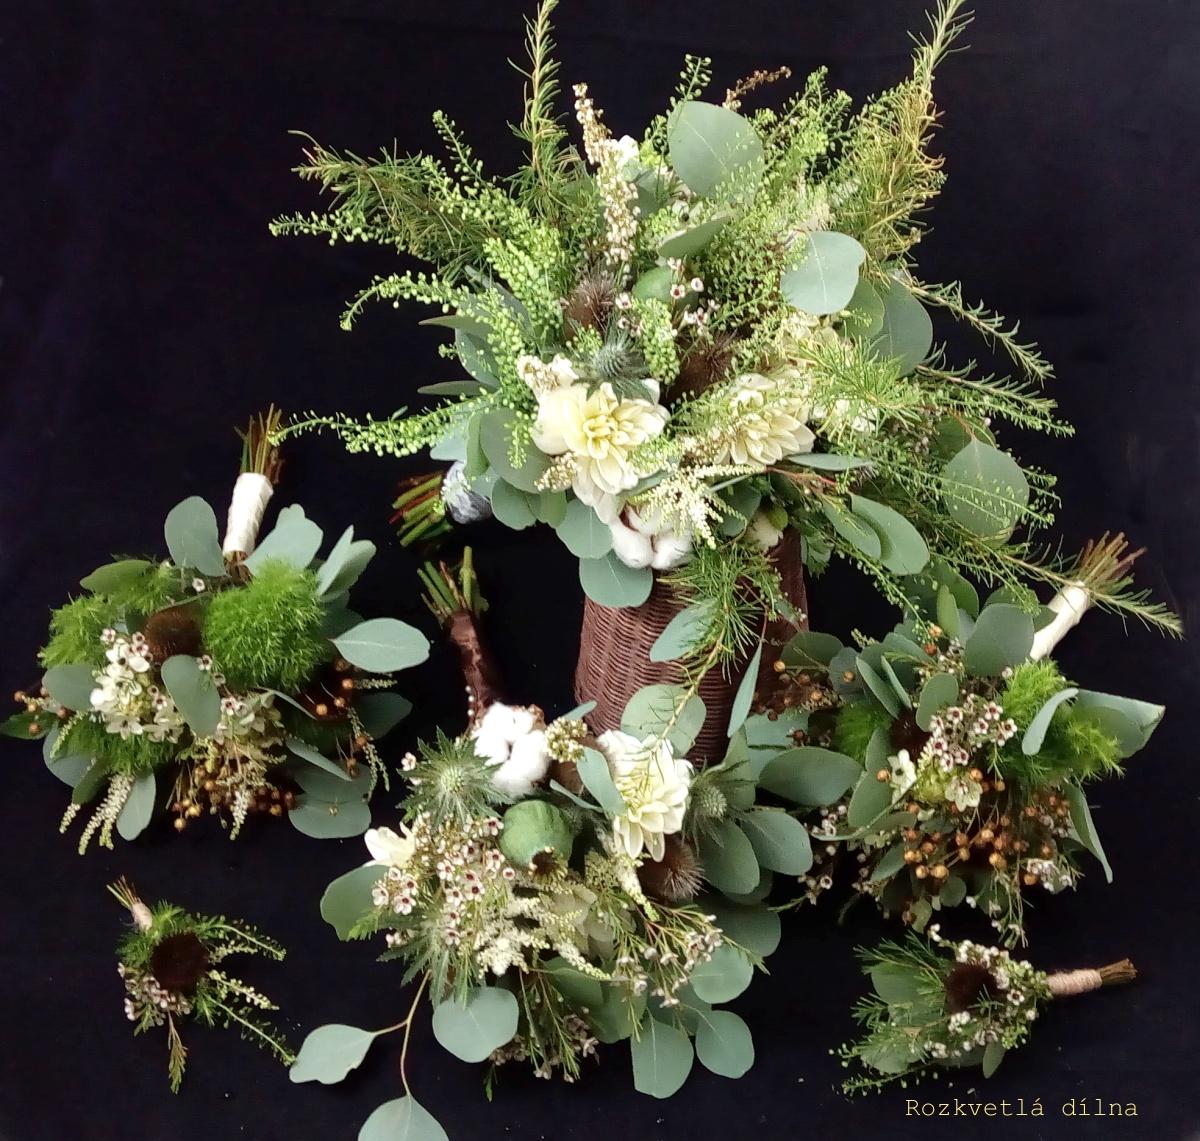 Podzimní - zeleno-hnědo-bílá - set - podzimní kytice v zeleno-hnědo-bílé